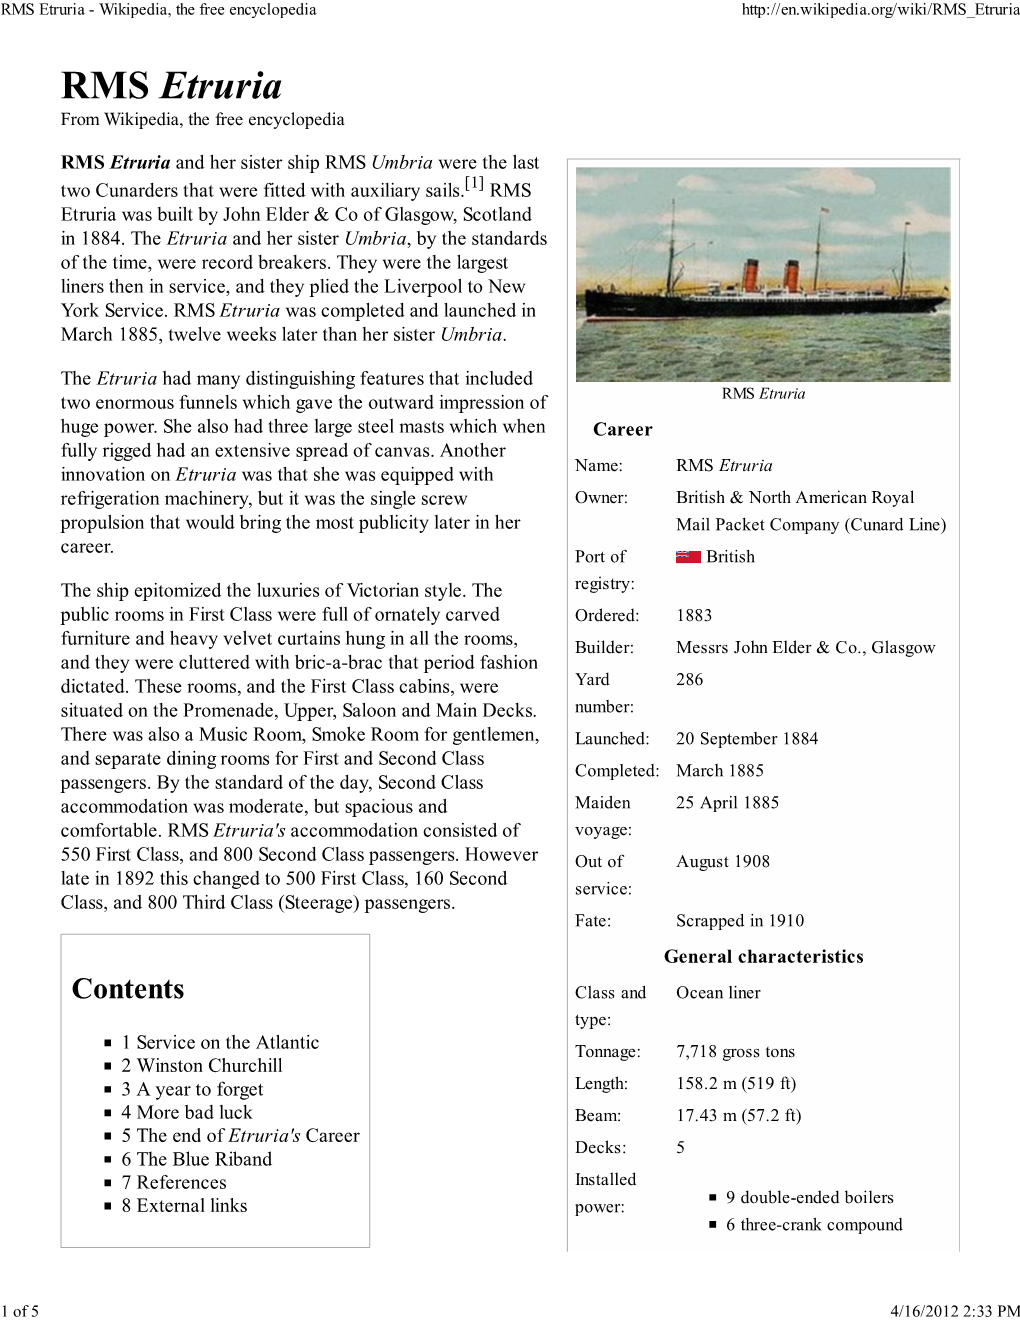 RMS Etruria - Wikipedia, the Free Encyclopedia